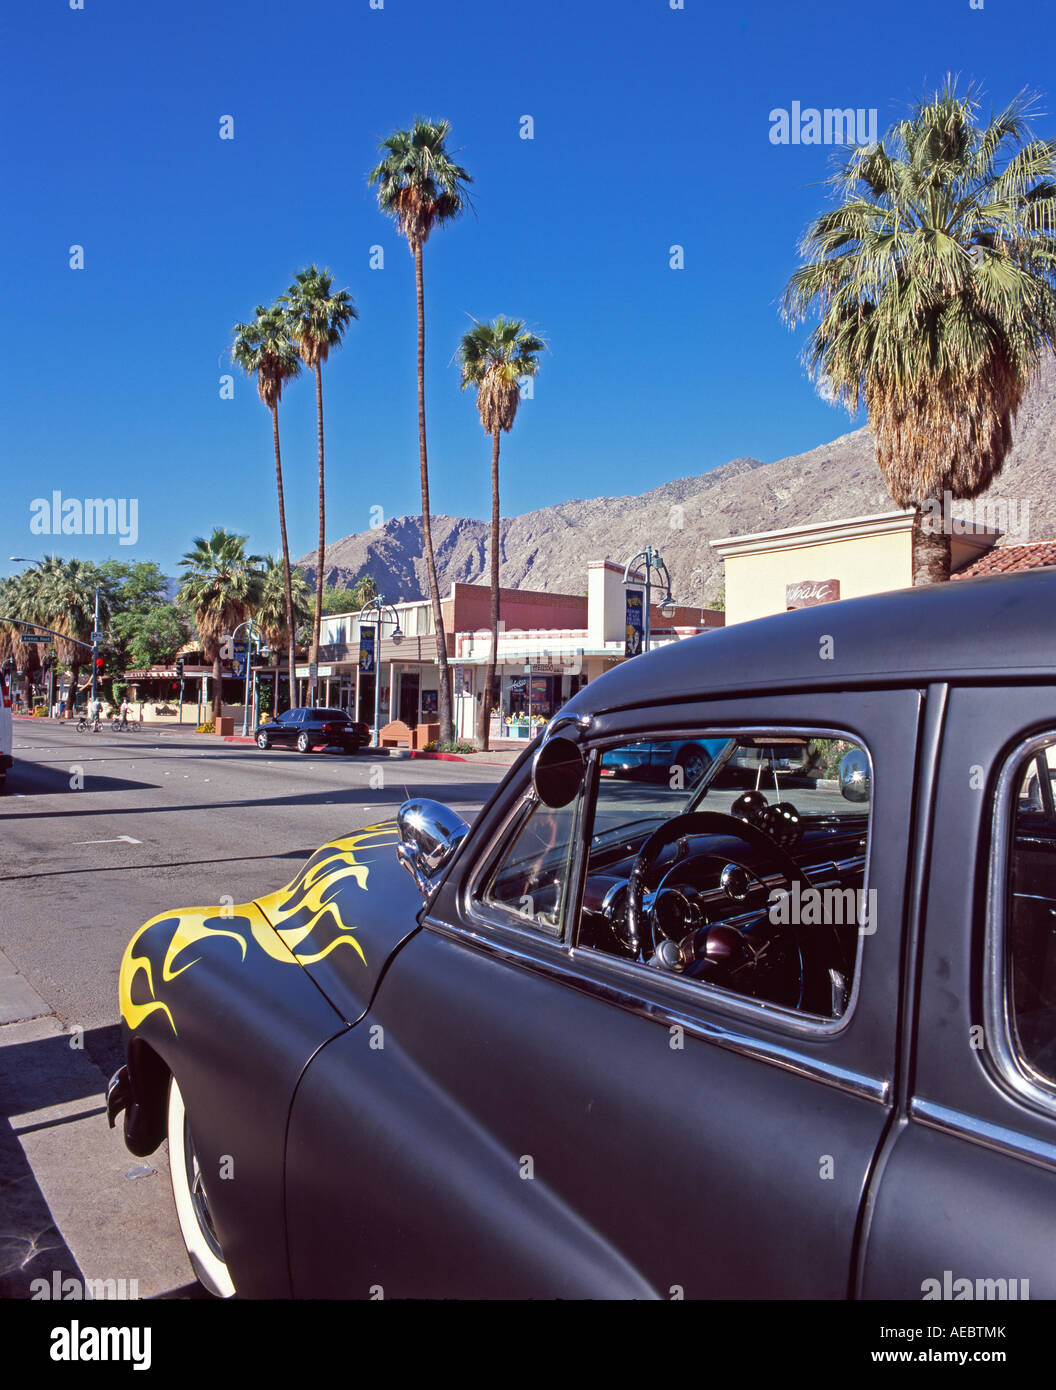 Années 1950 sur la rue Main voiture Palm Springs Californie USA Amérique du Nord Banque D'Images